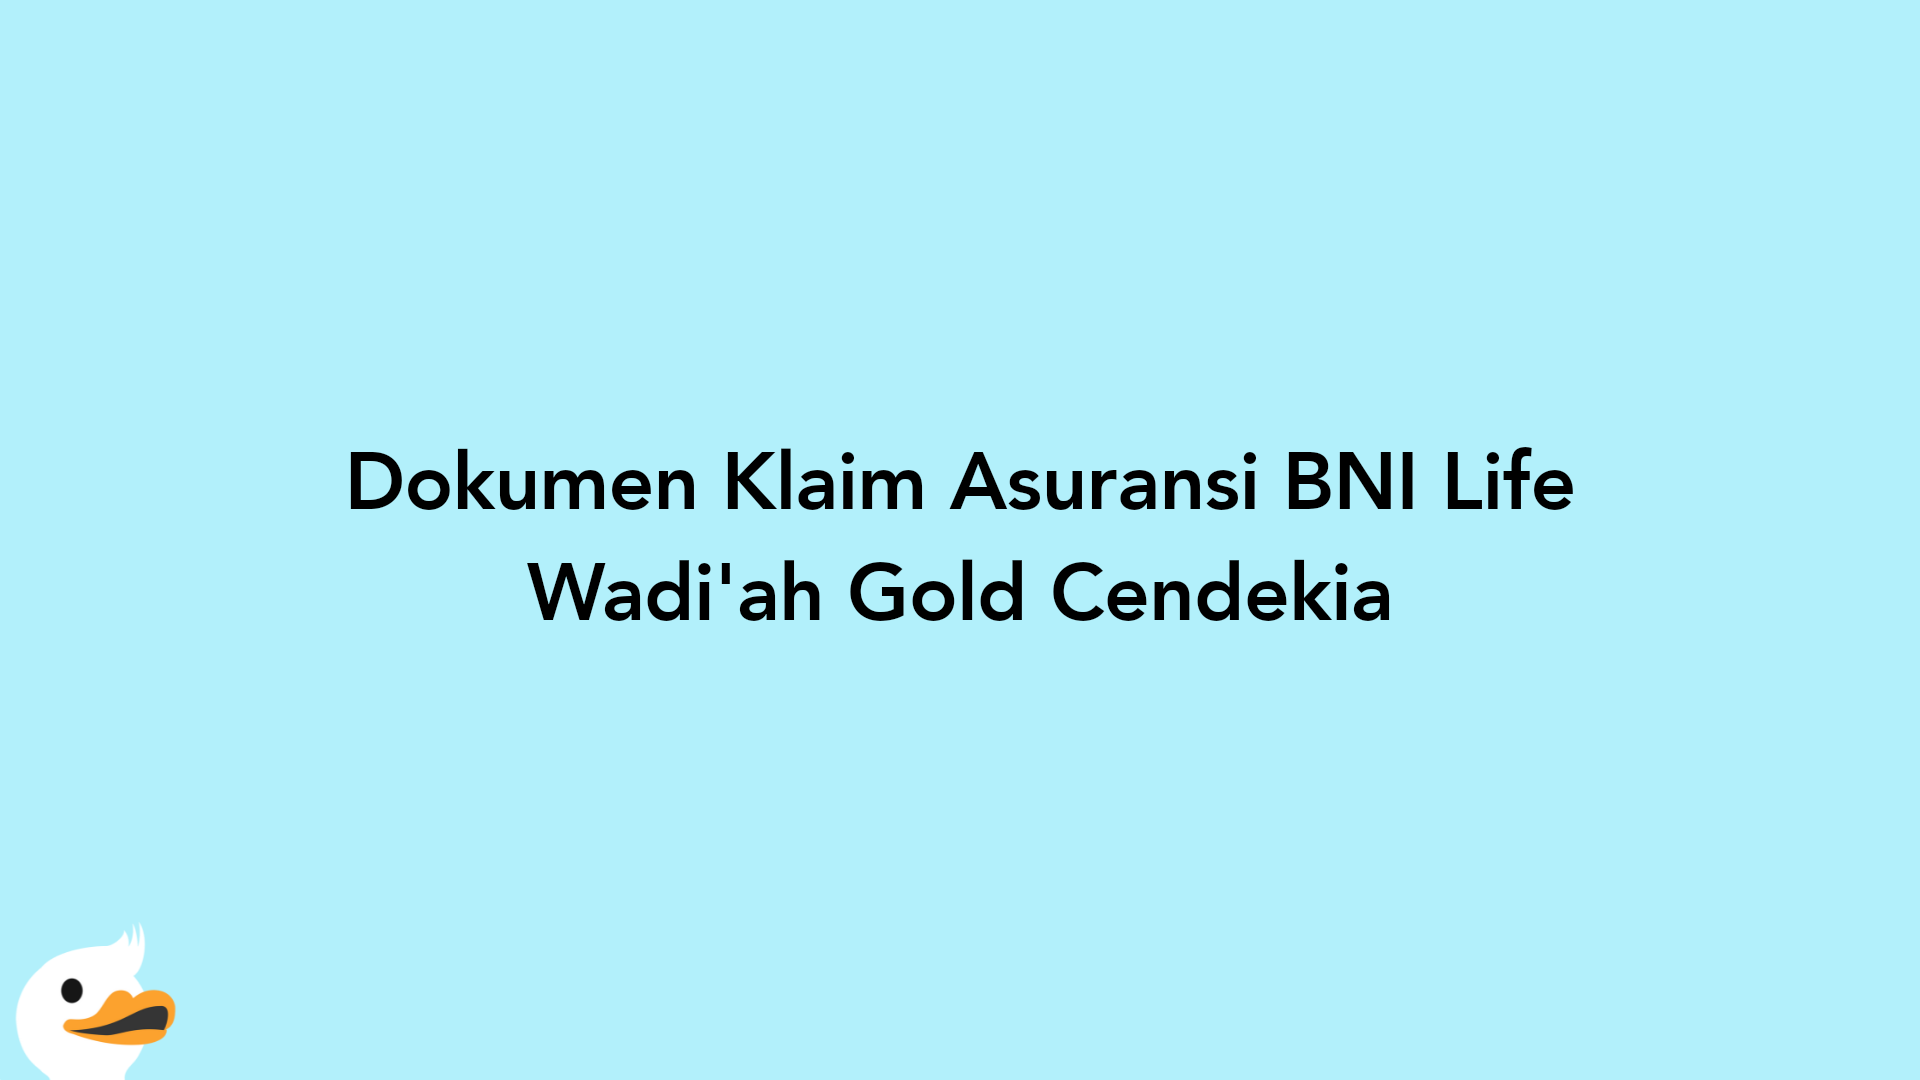 Dokumen Klaim Asuransi BNI Life Wadi'ah Gold Cendekia